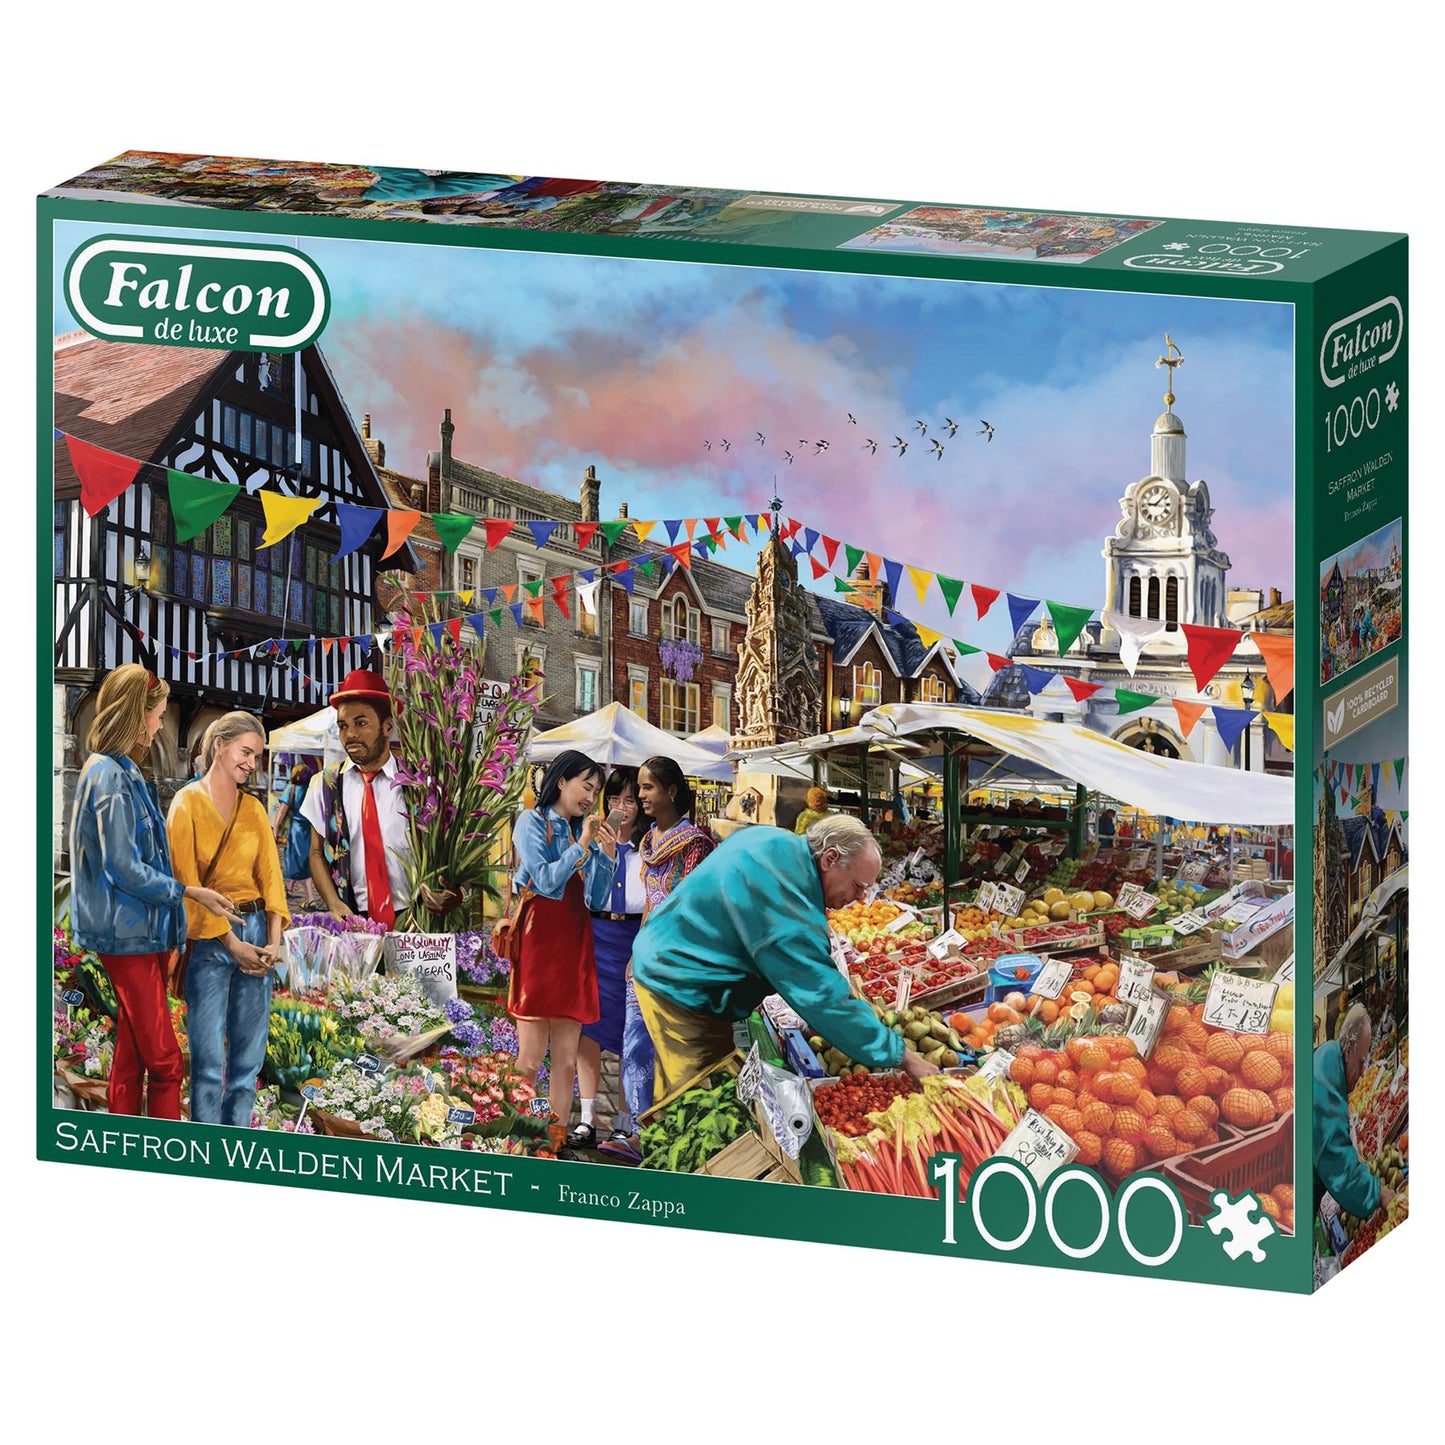 Falcon De Luxe Saffron Walden Market 1000 Piece Jigsaw Puzzle